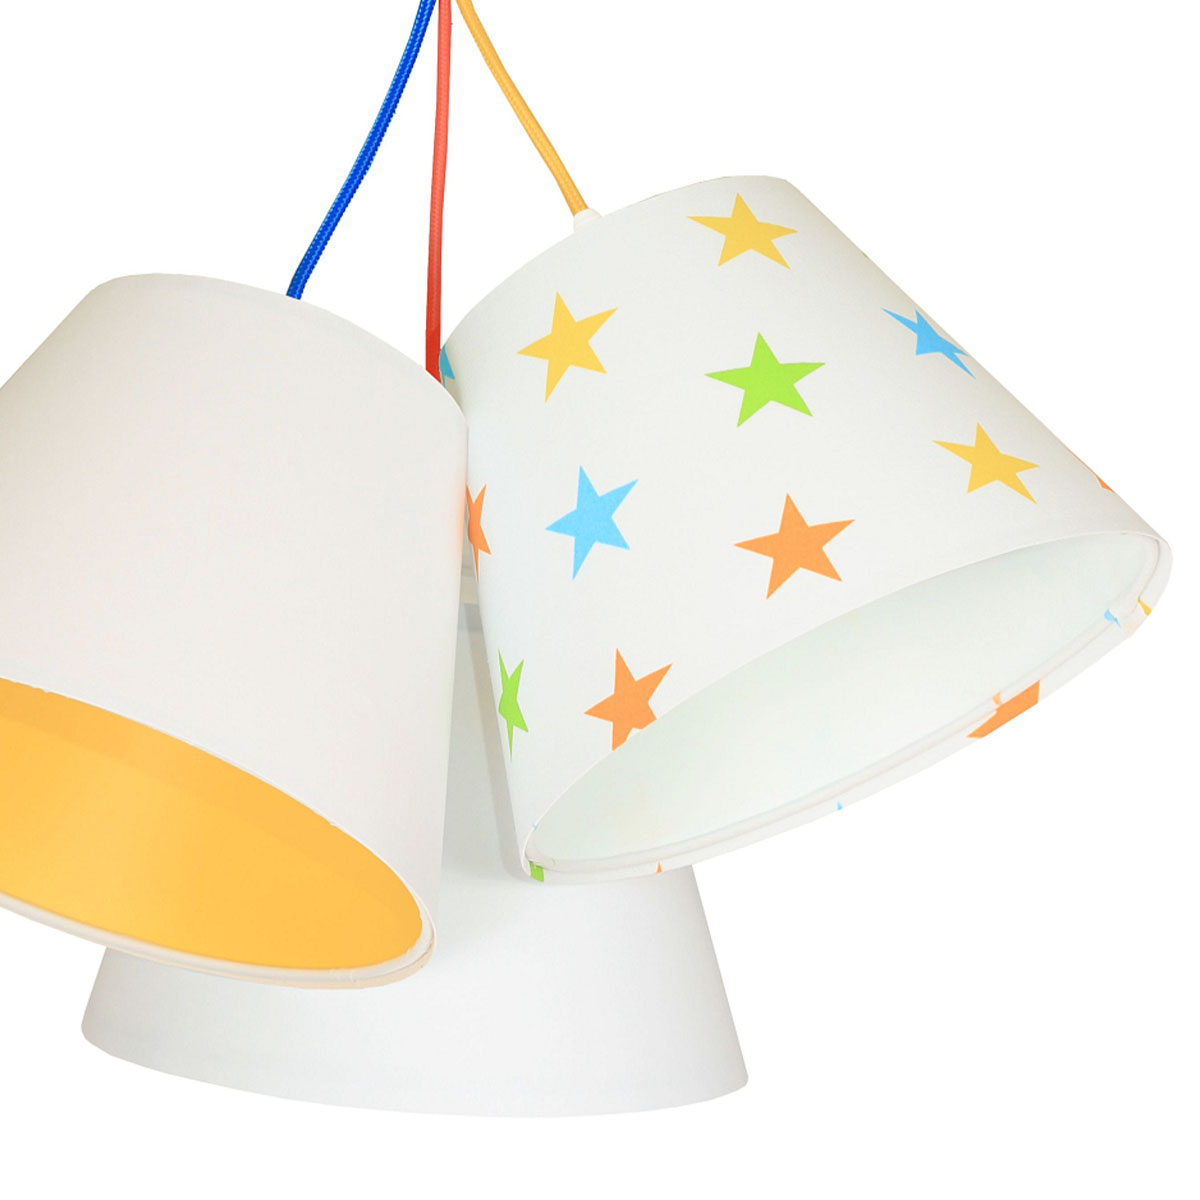 Kinderzimmer Pendelleuchte Sternenmuster mehrfarbig, Ø: 53 cm, Weiß, Orange